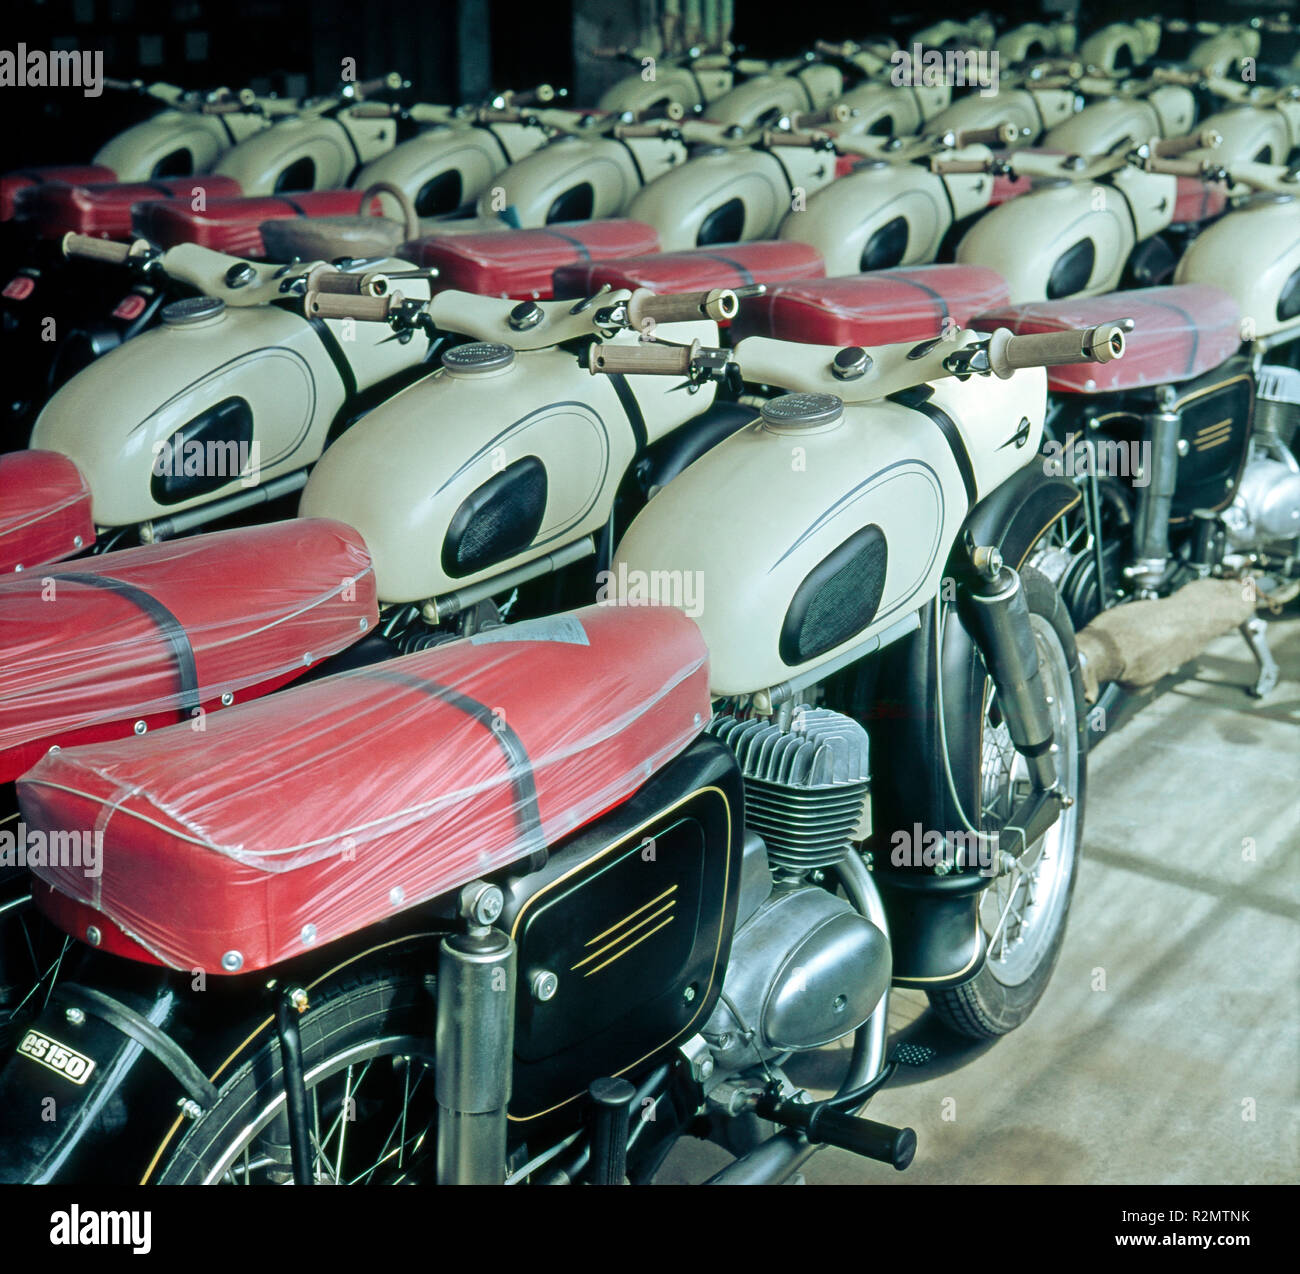 Nueva marca de motocicletas MZ de Zschopau, es de 150, desde la época de la RDA Foto de stock